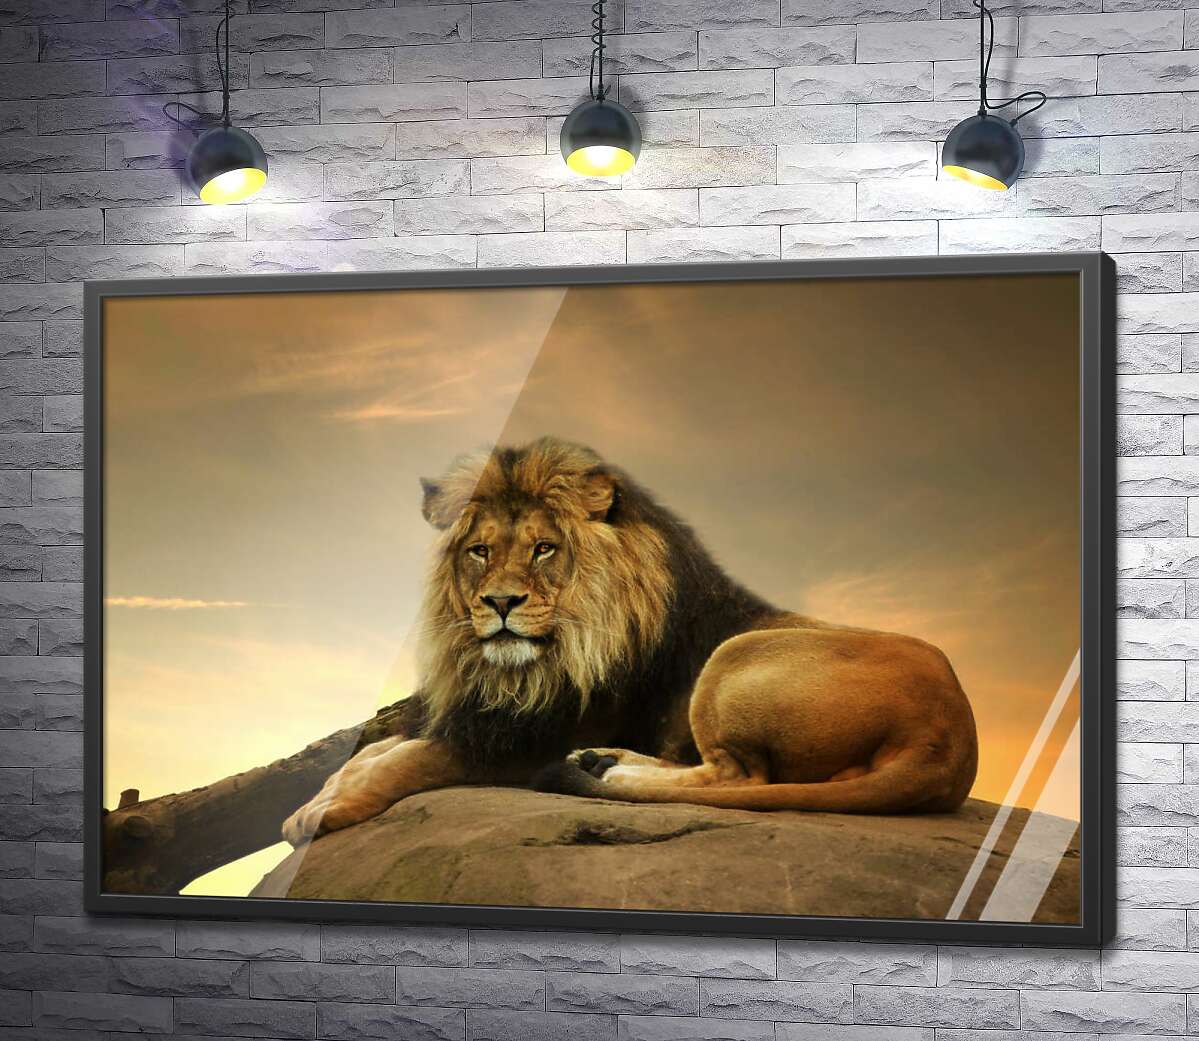 постер Царь зверей: рыжий лев лежит на камне